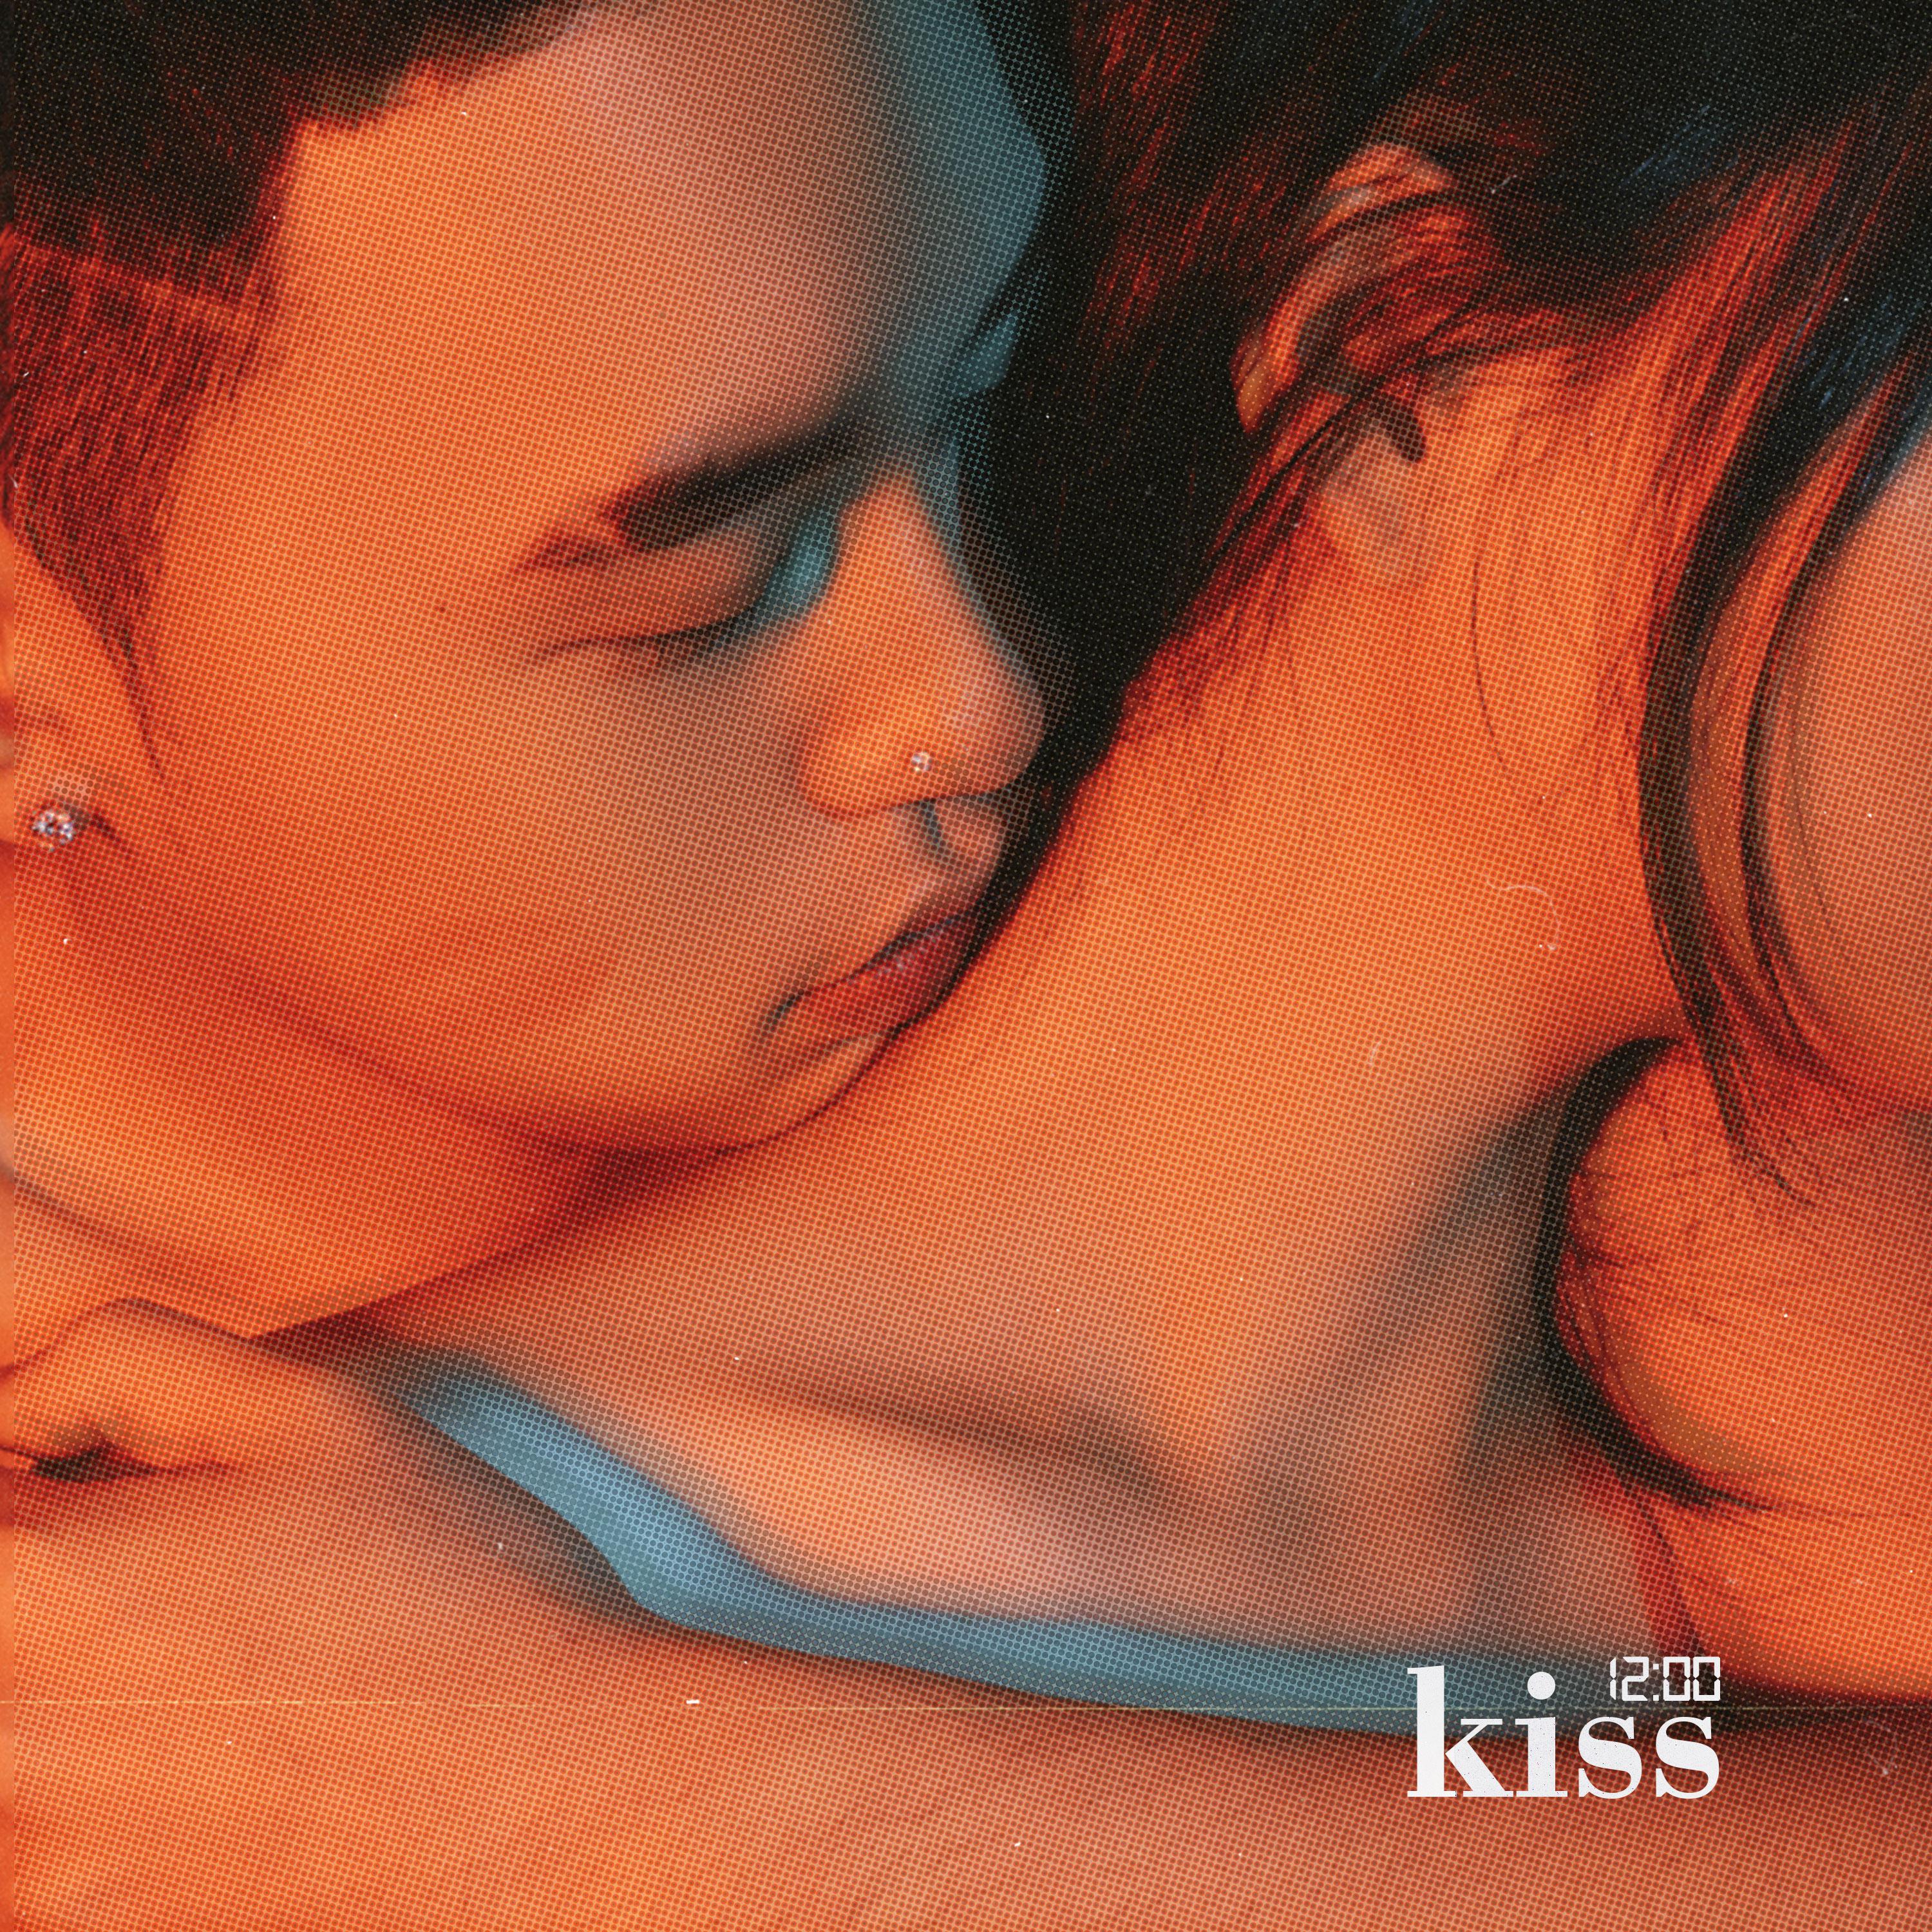 덤벼대歌词 歌手twlv / CHANGMO / SUPERBEE-专辑K.I.S.S-单曲《덤벼대》LRC歌词下载